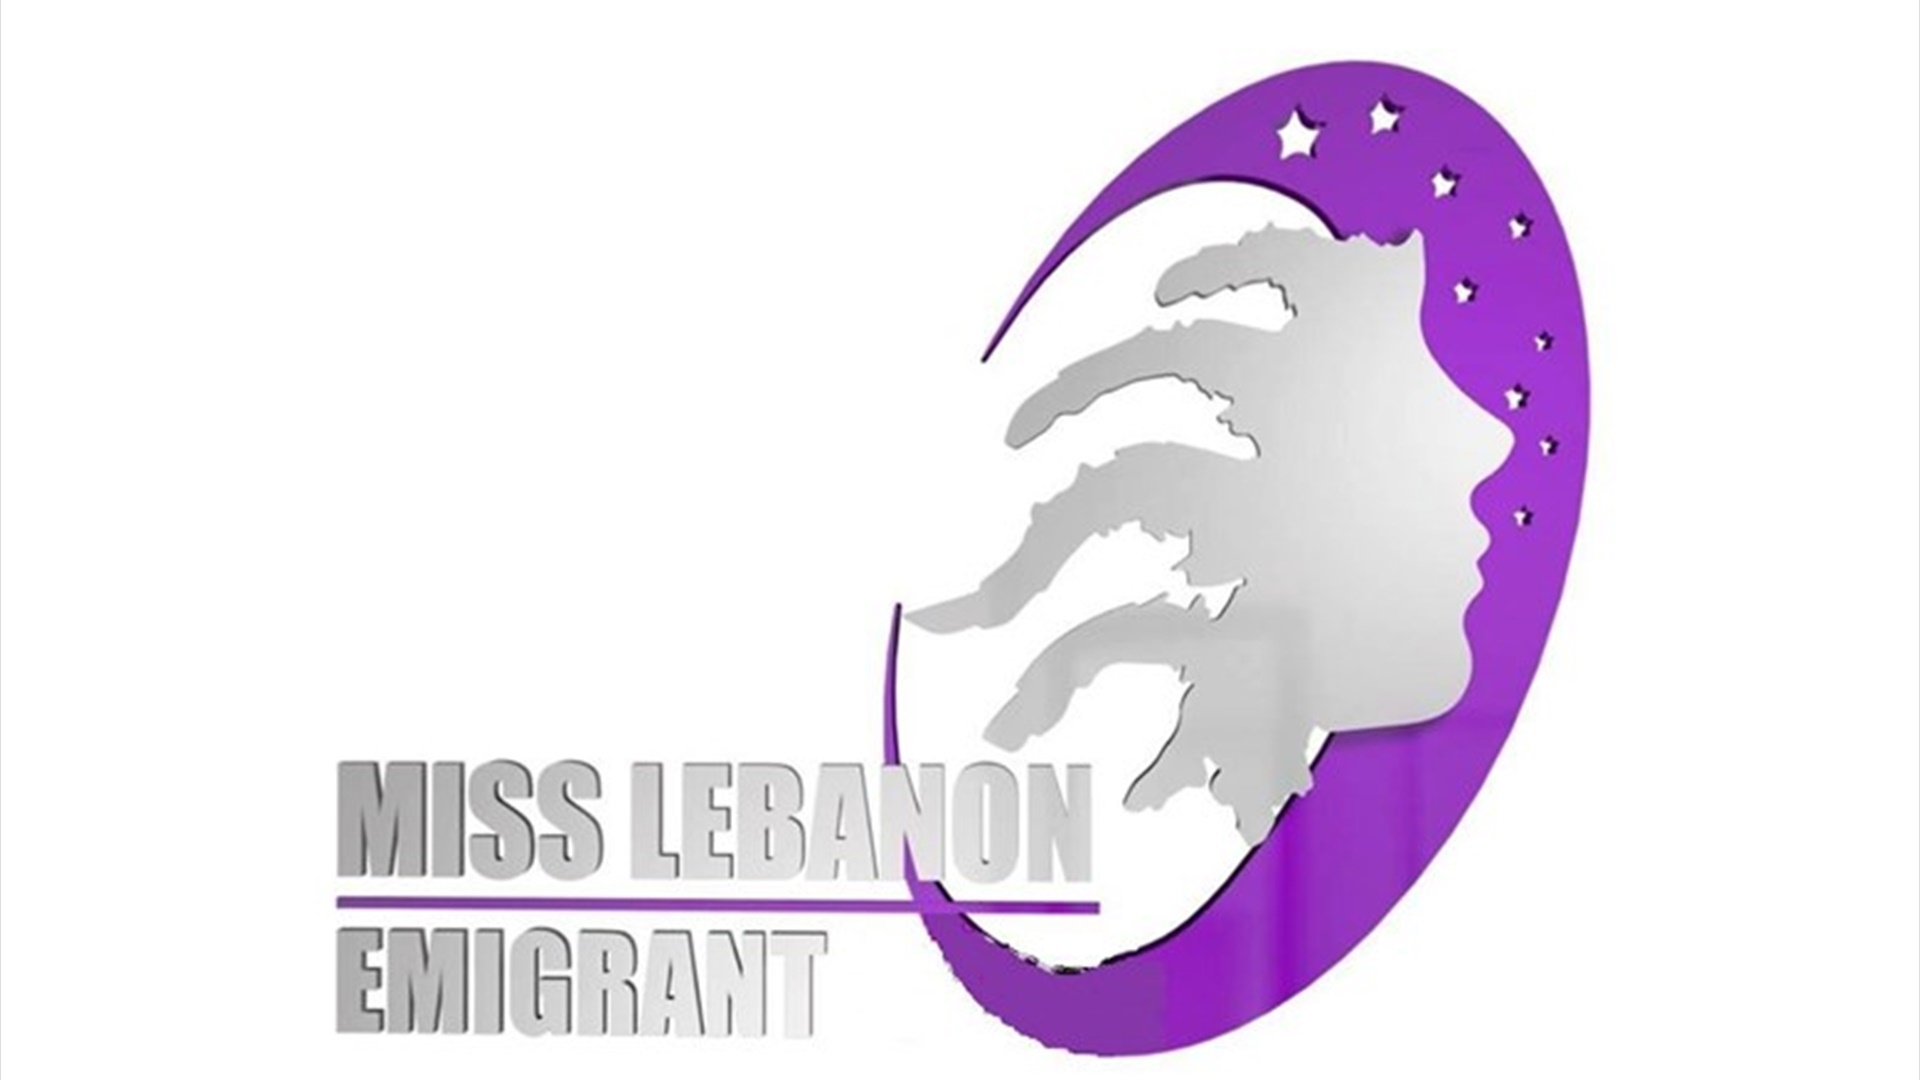 Miss Lebanon Emigrant